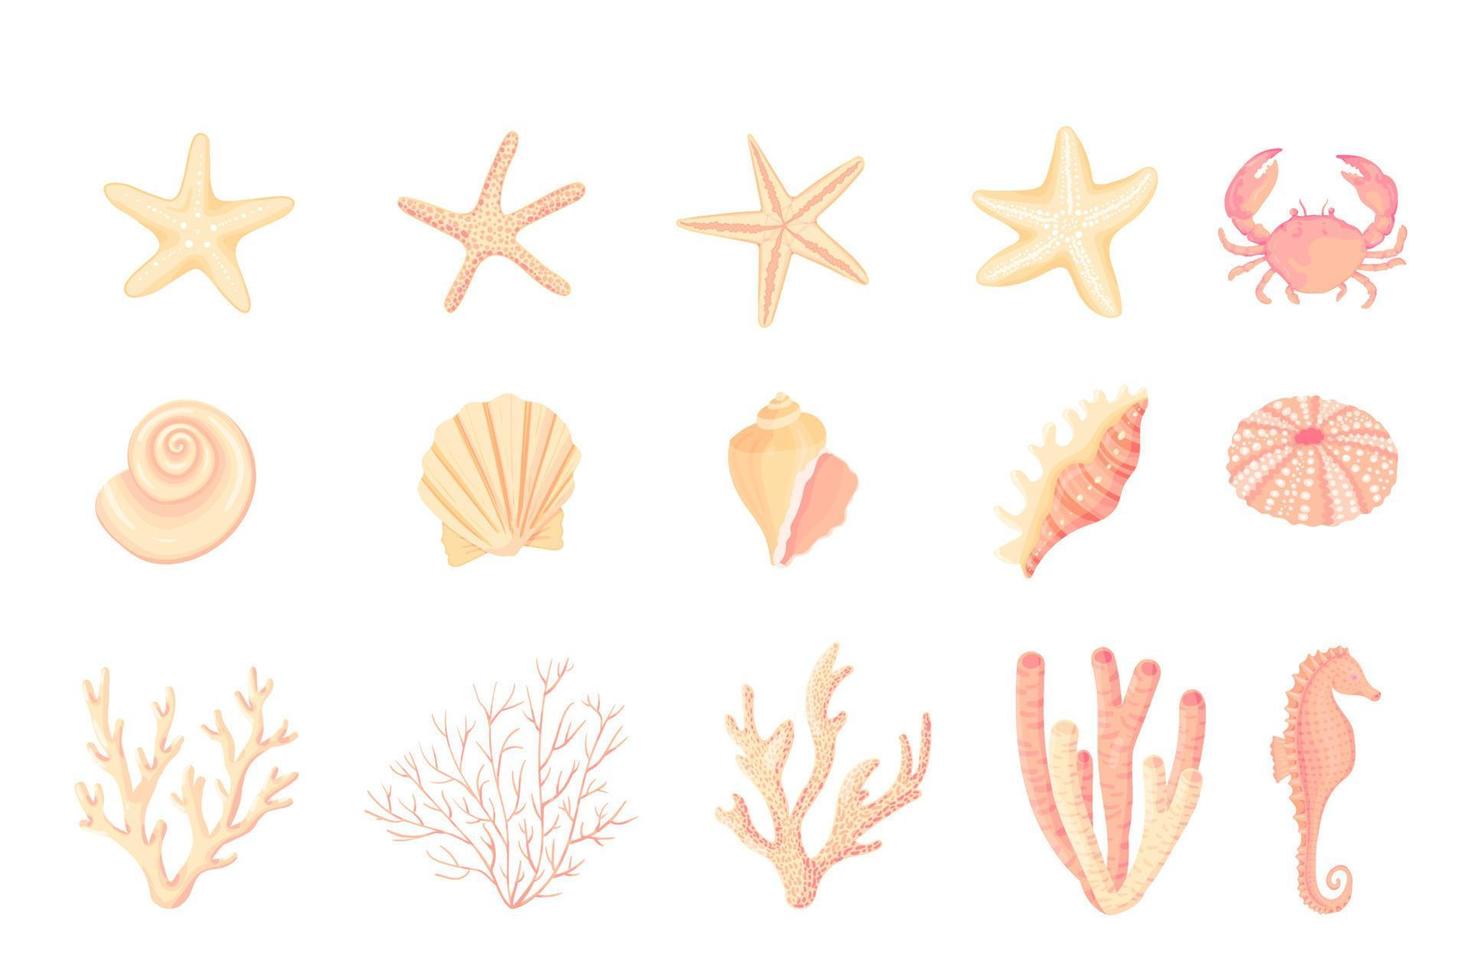 conjunto de vectores de conchas marinas. colección de dibujos planos, dibujos animados de moluscos conchas marinas, estrellas de mar, erizos de mar, caballitos de mar, hipocampo, cangrejos, corales. Arrecife de coral de moda bajo la colección de agua aislado en blanco